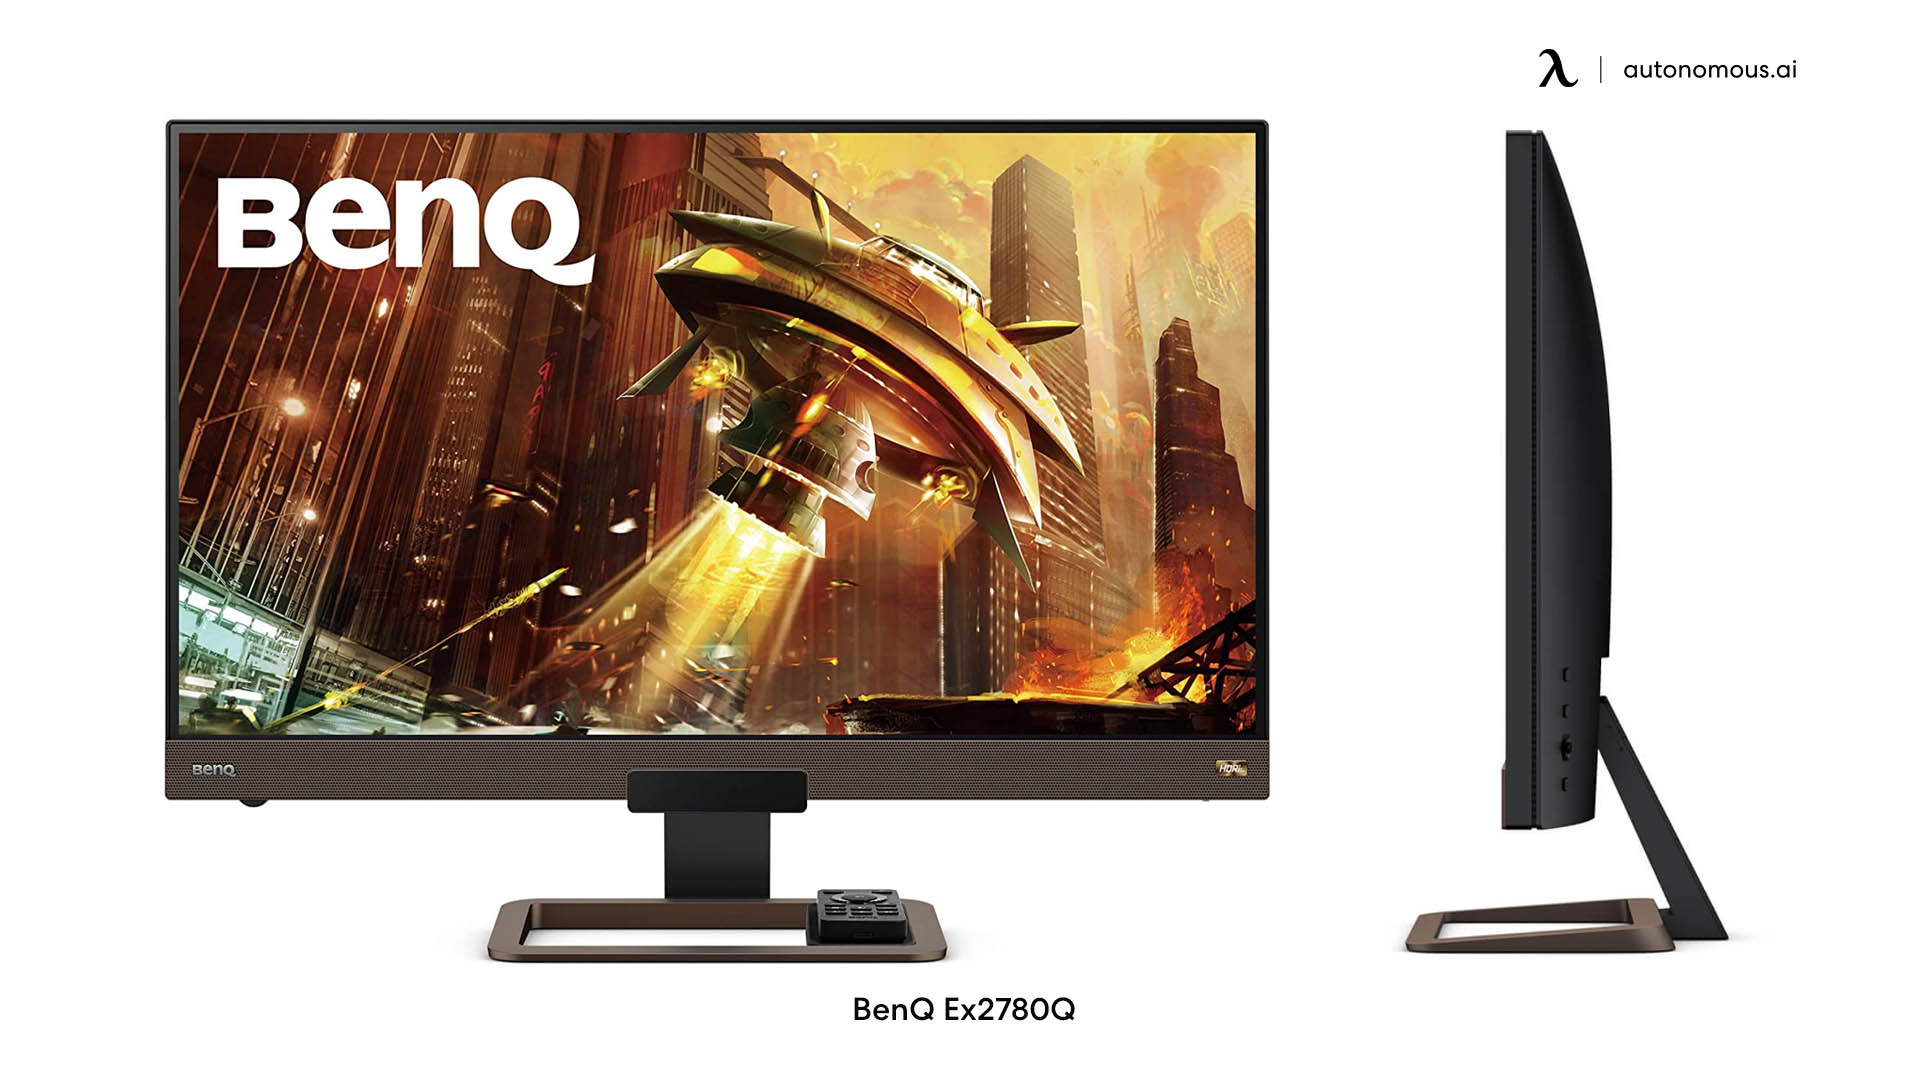 BenQ Ex2780Q minimalist monitor